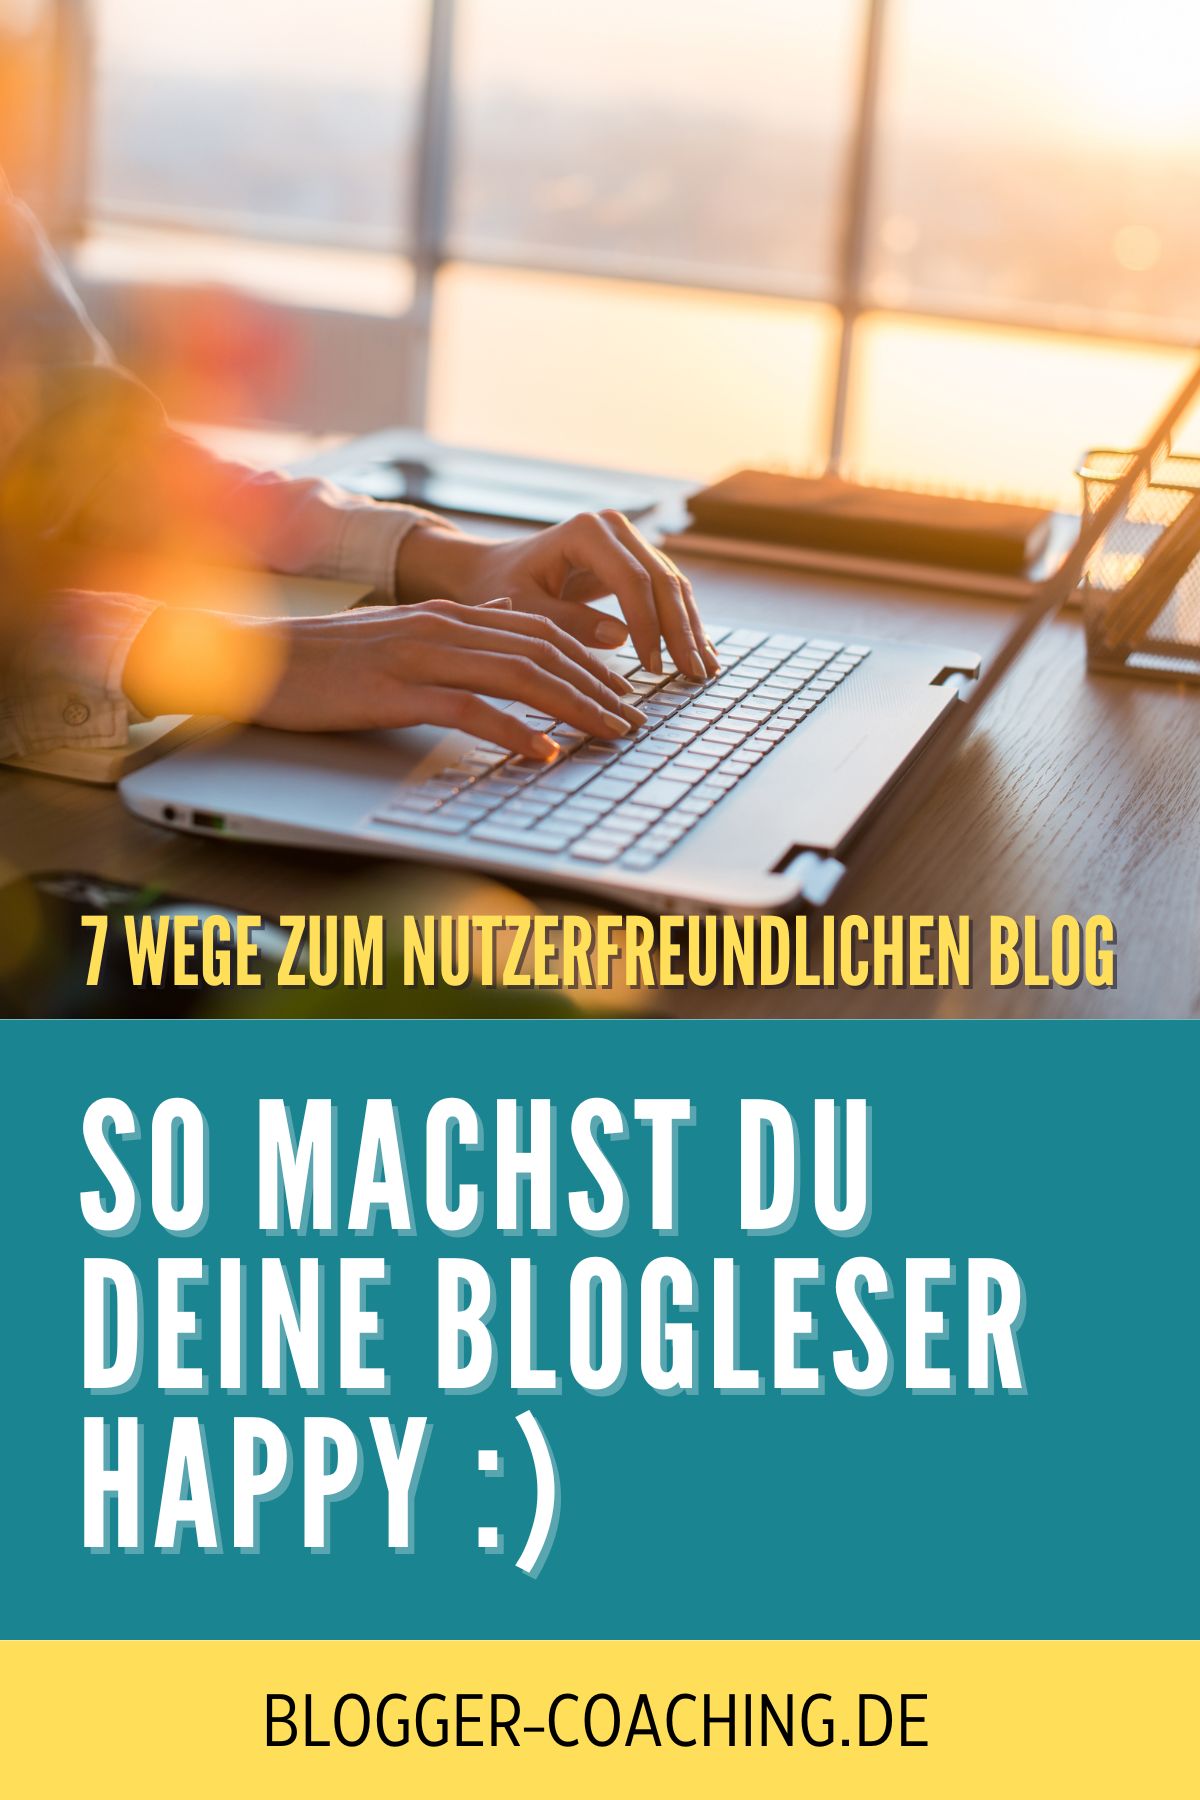 7 Wege, deinen Blog nutzerfreundlicher zu gestalten - Filiz Odenthal - Business Blogger-Coaching